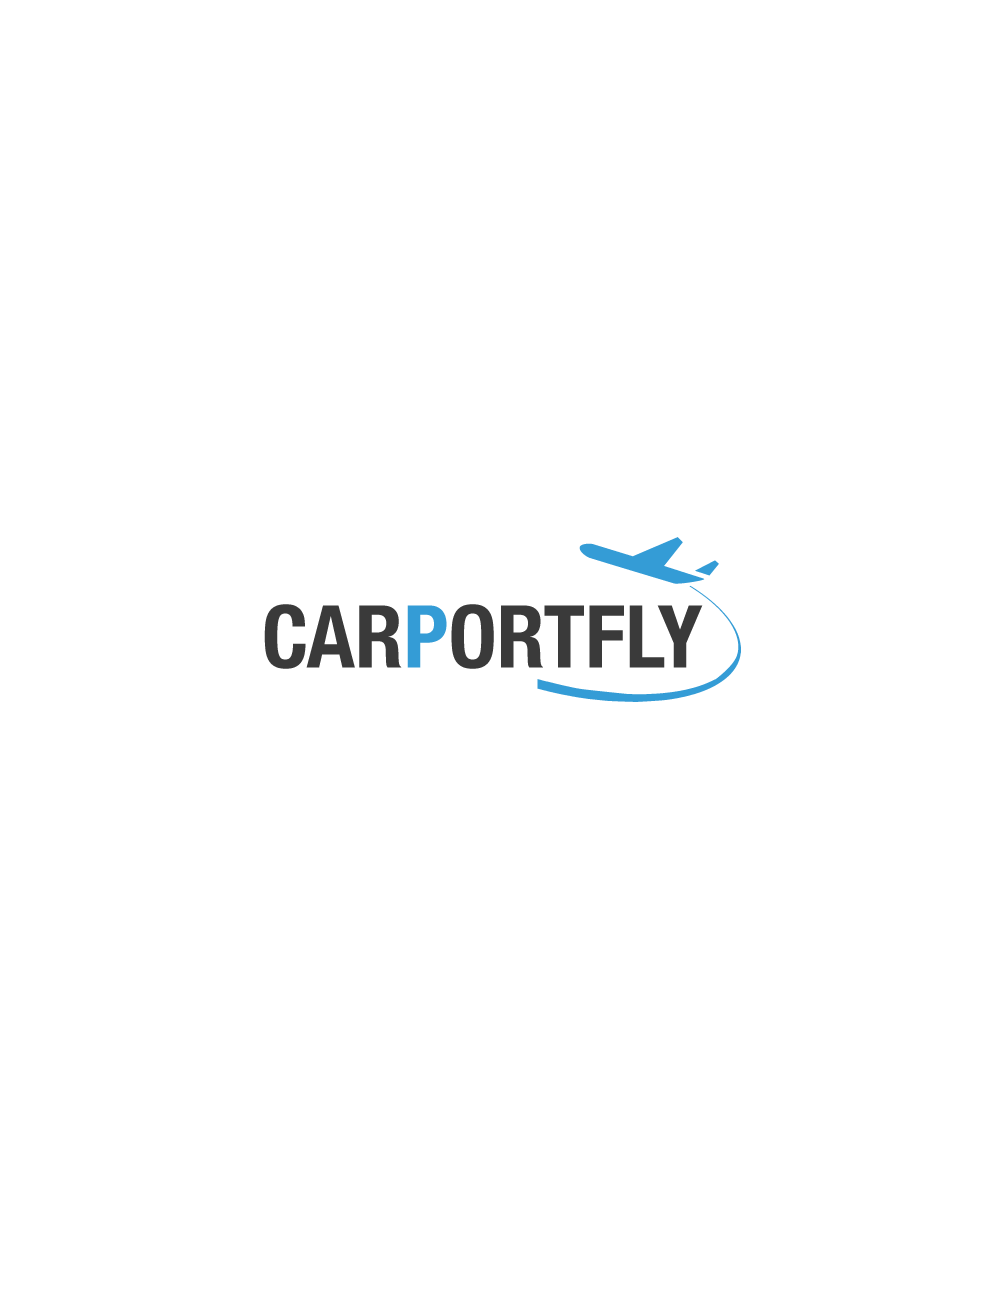 Carportfly